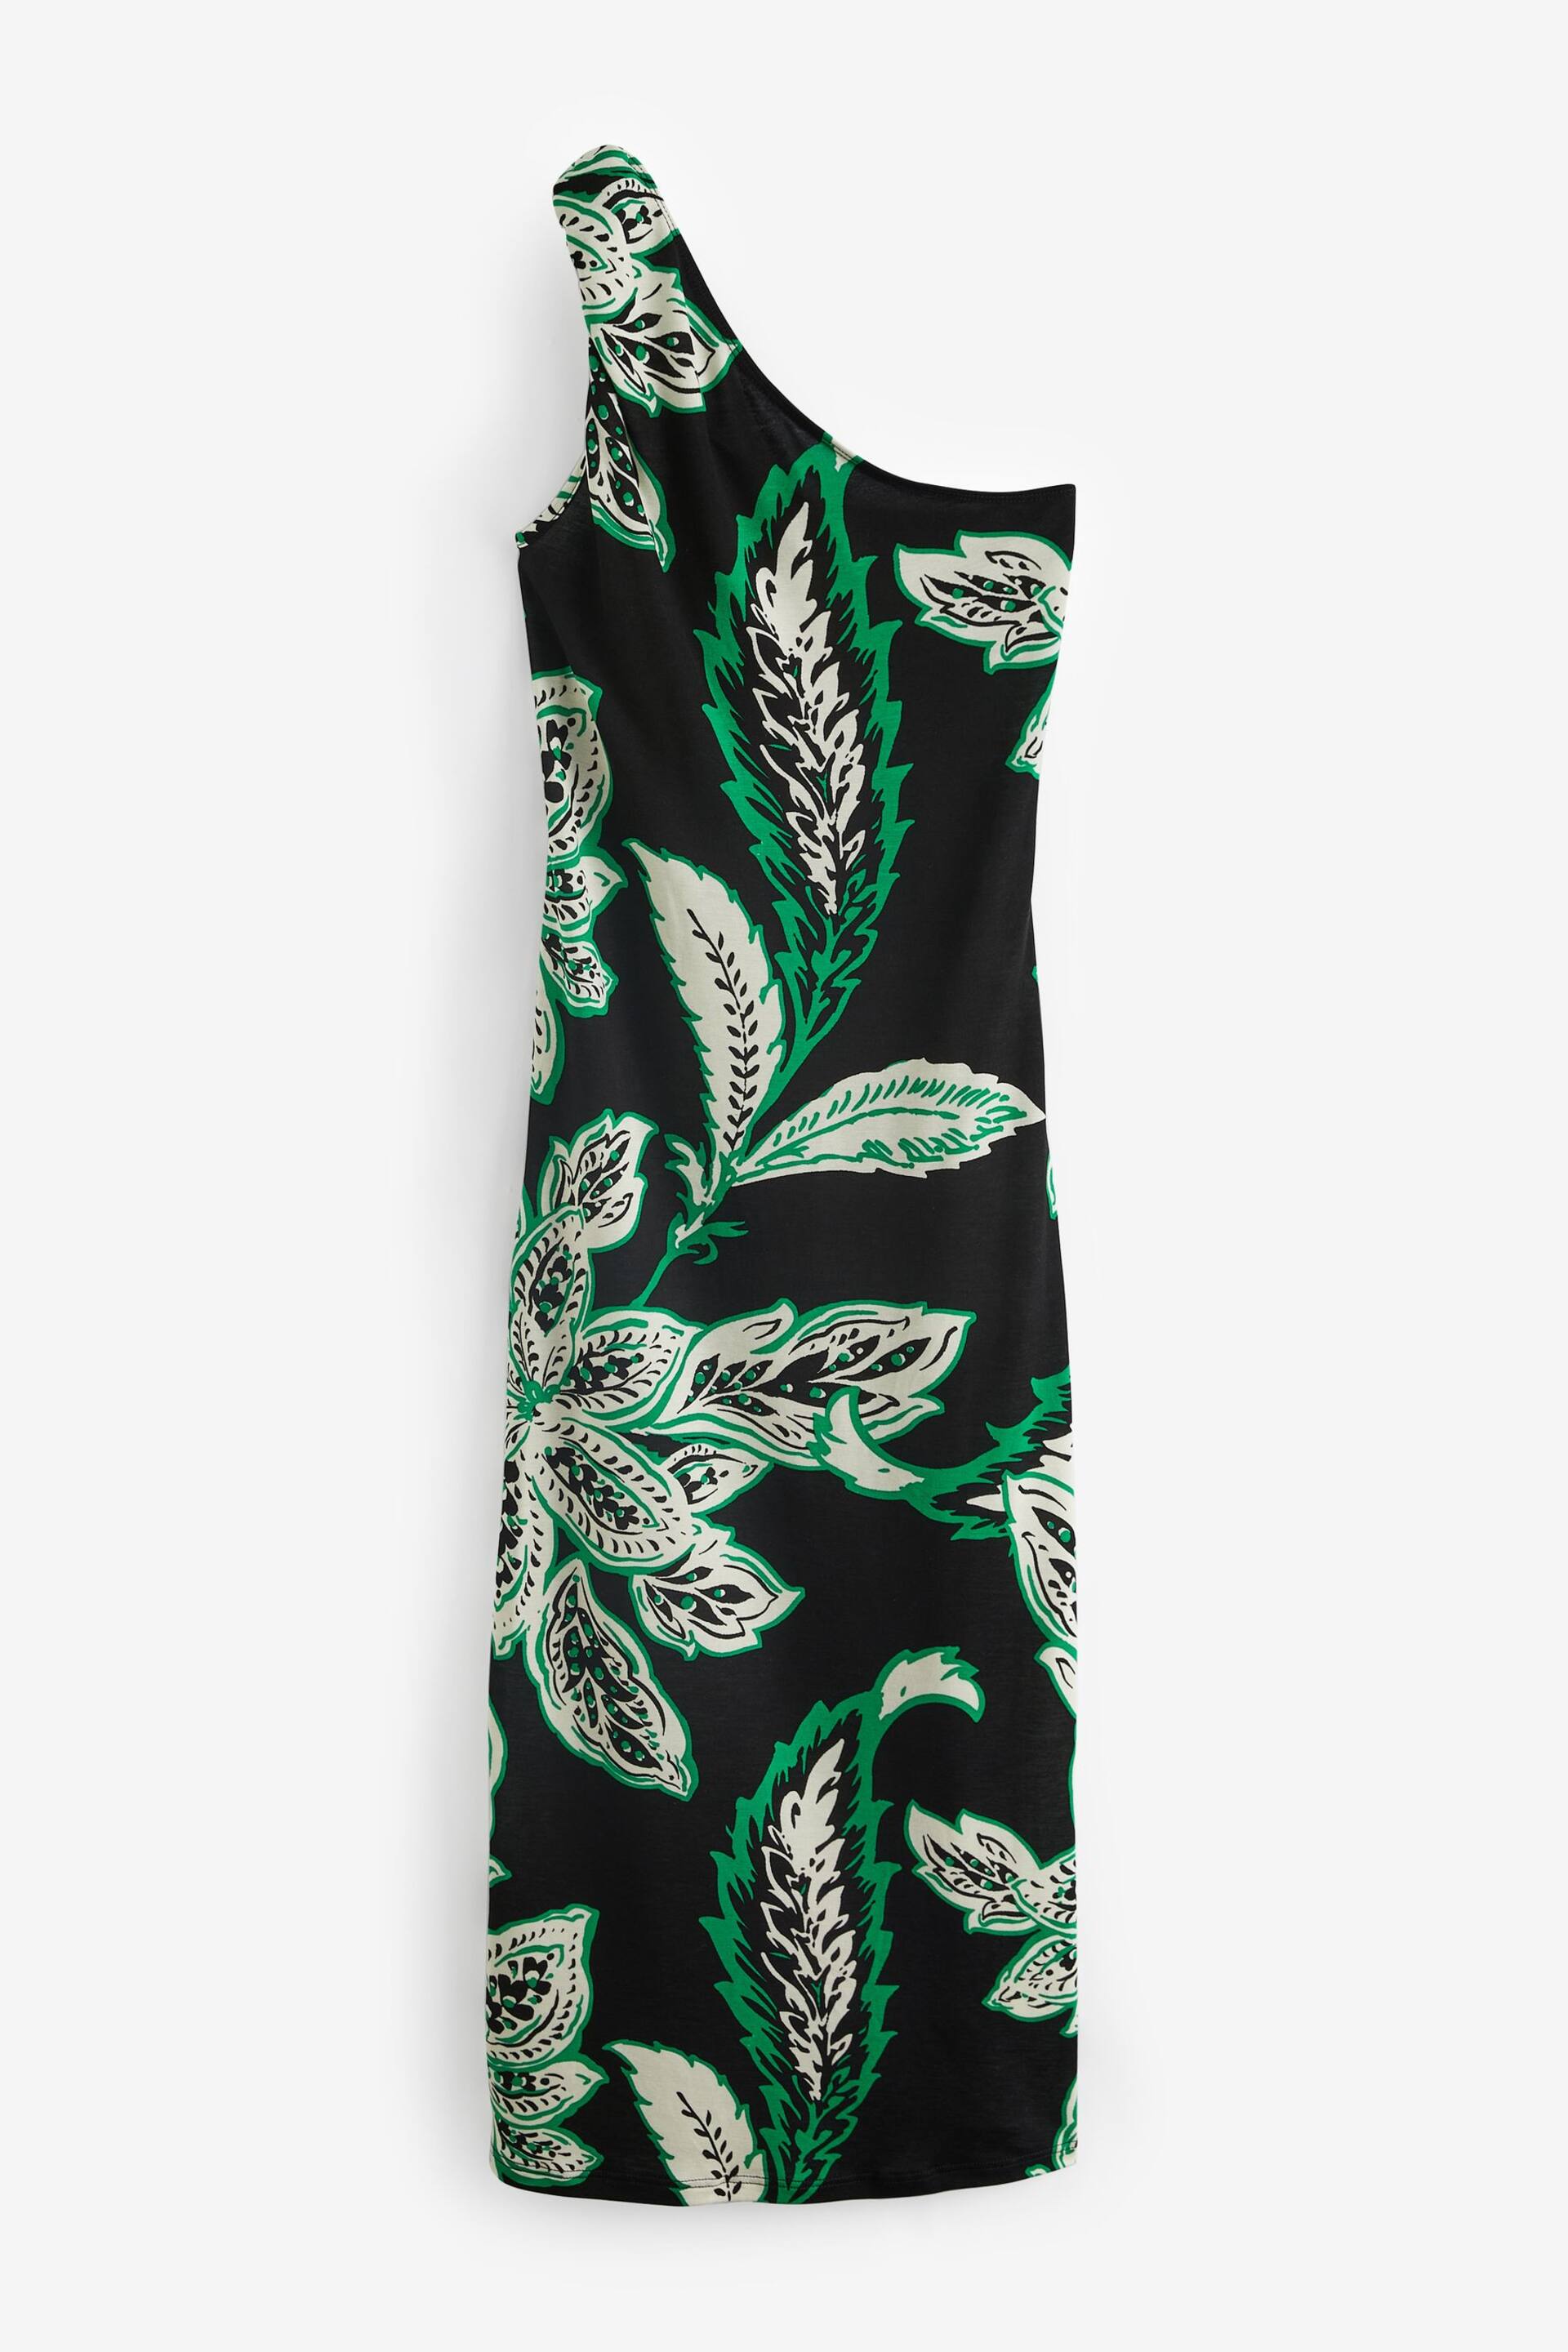 Black/Green Floral One Shoulder Twist Summer Dress - Image 7 of 8